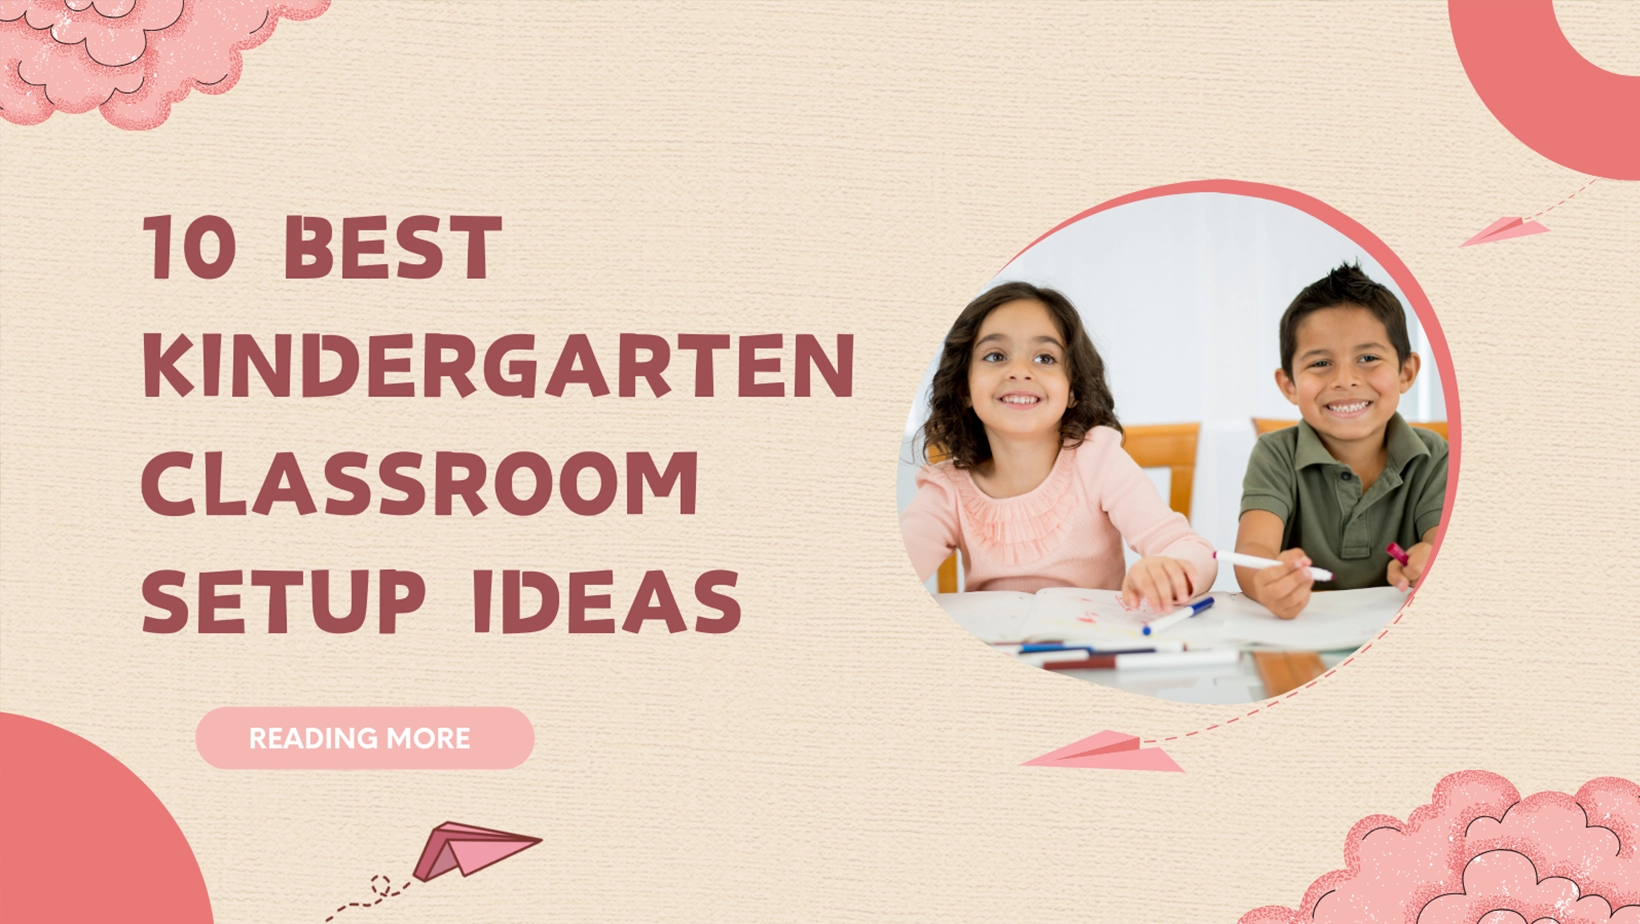 10 Best Kindergarten Classroom Setup Ideas